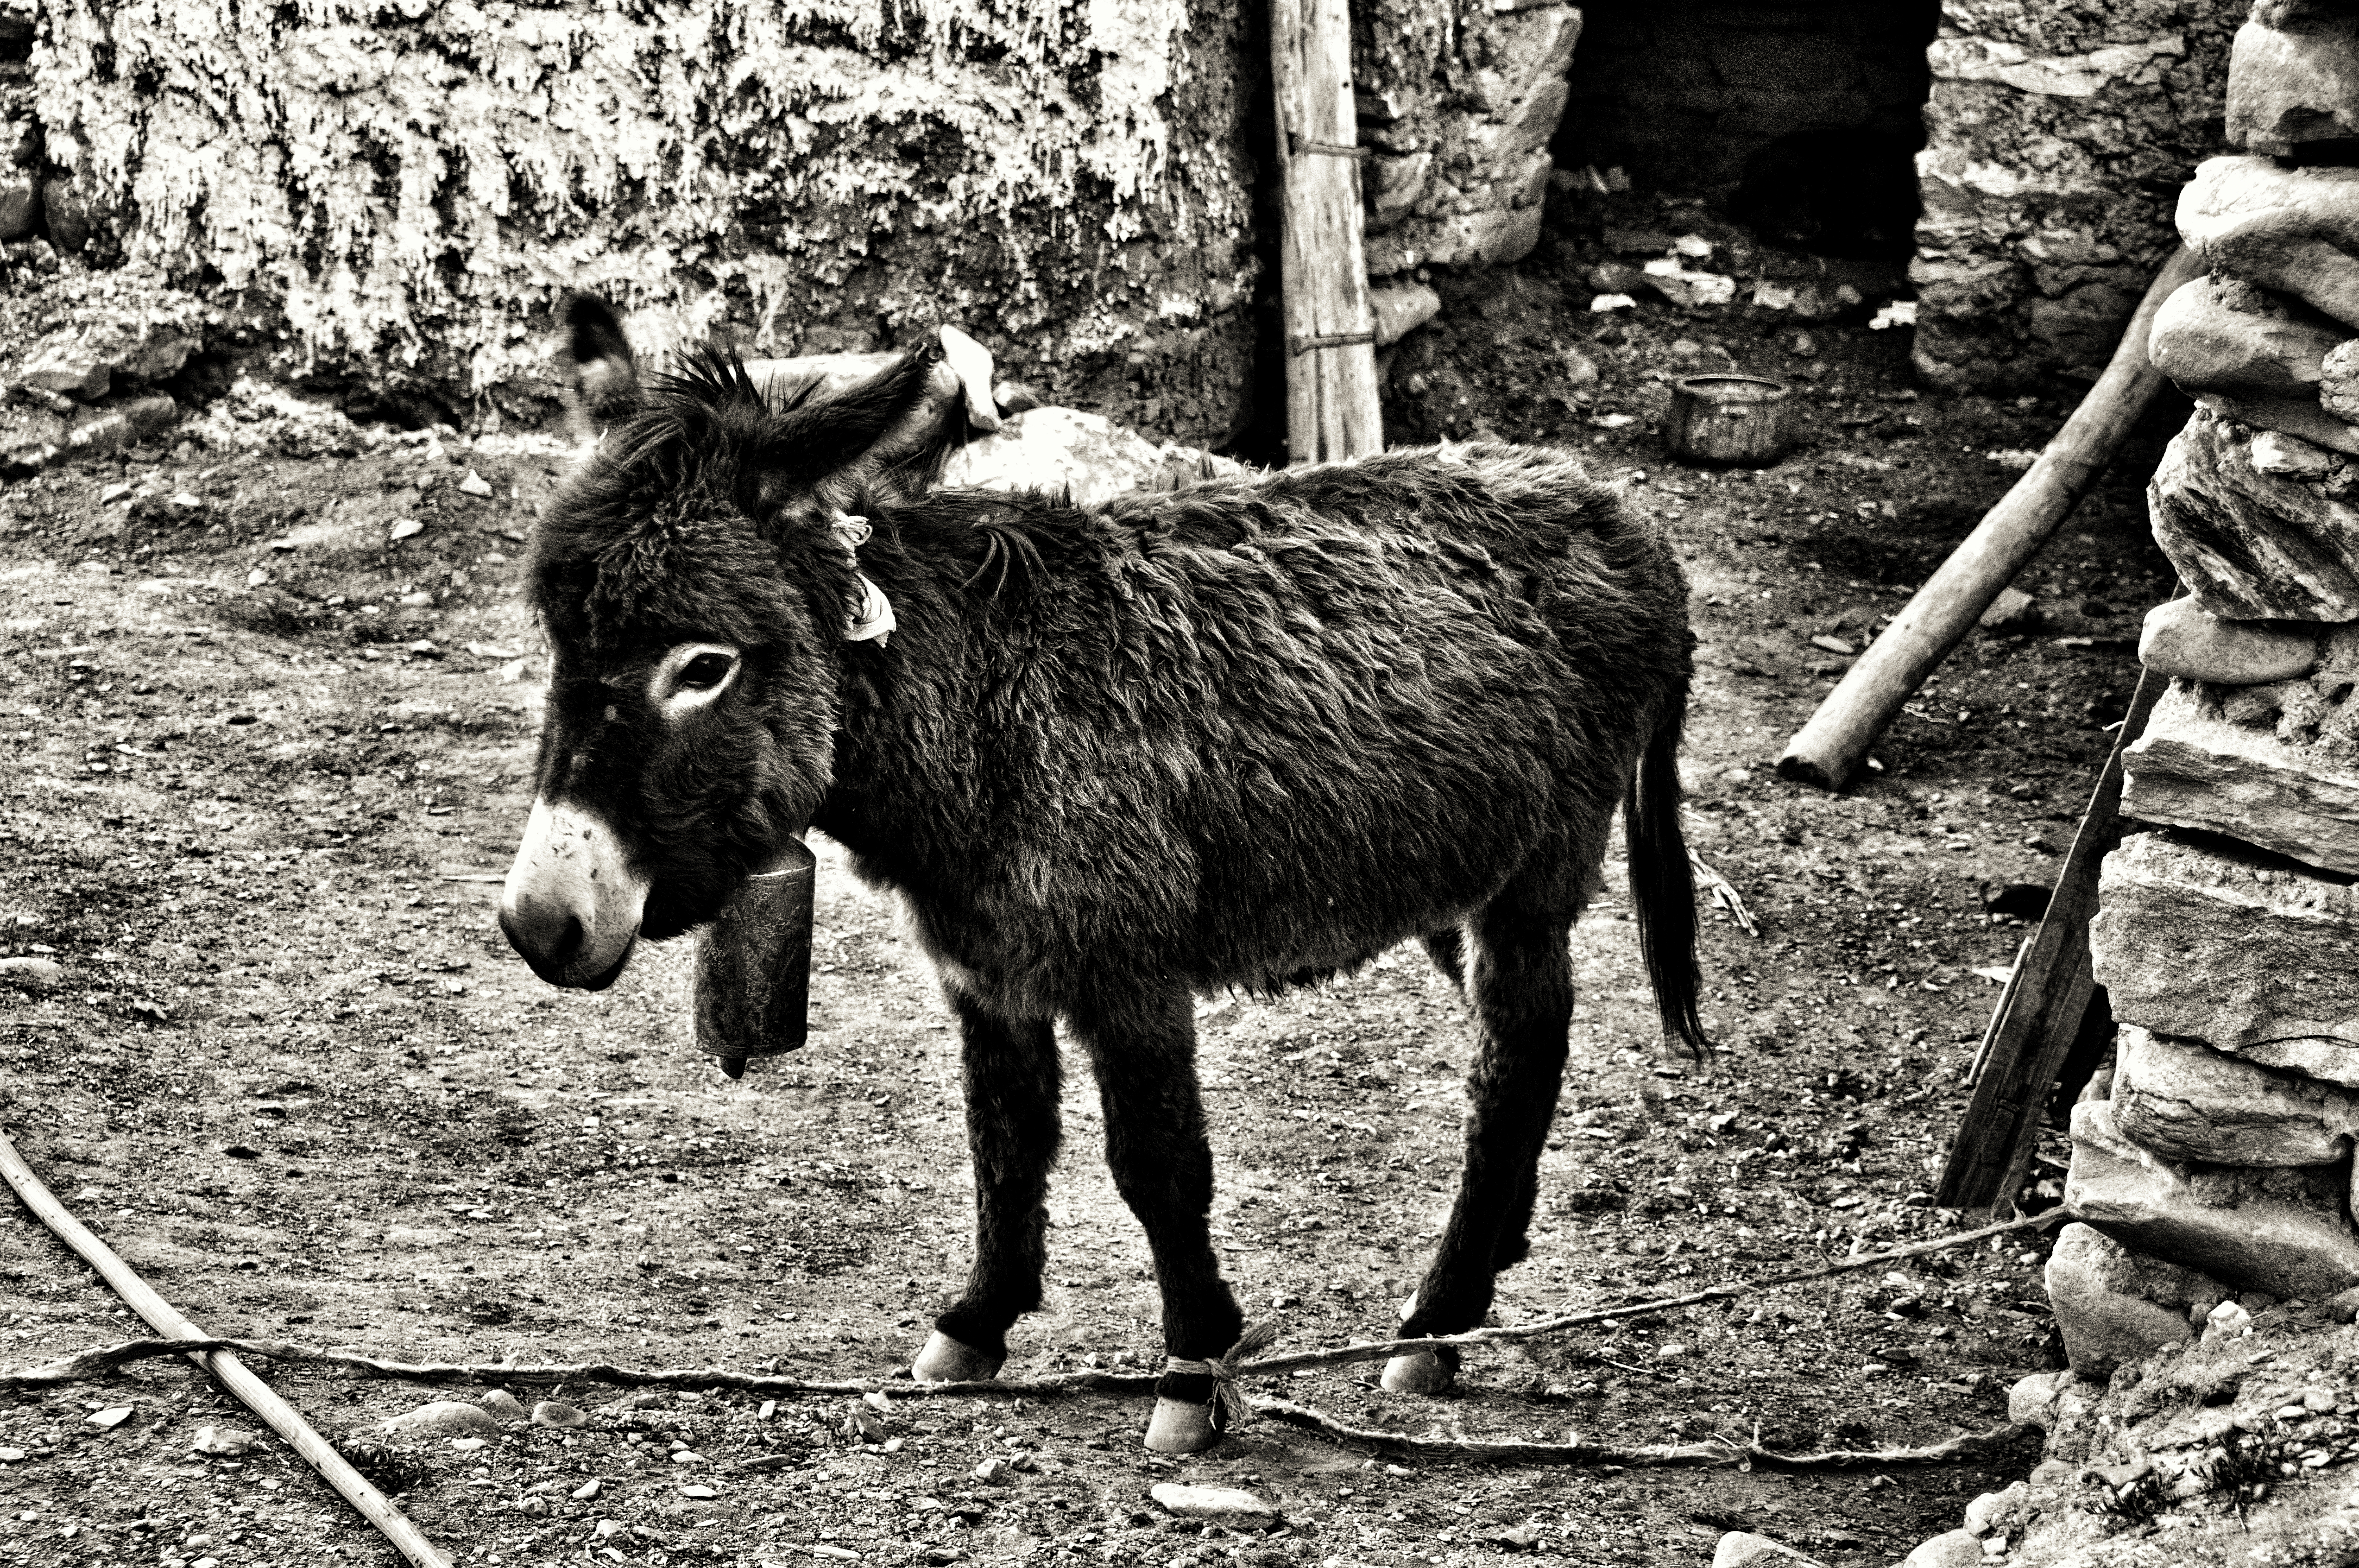 Donkey, Ladakh, India